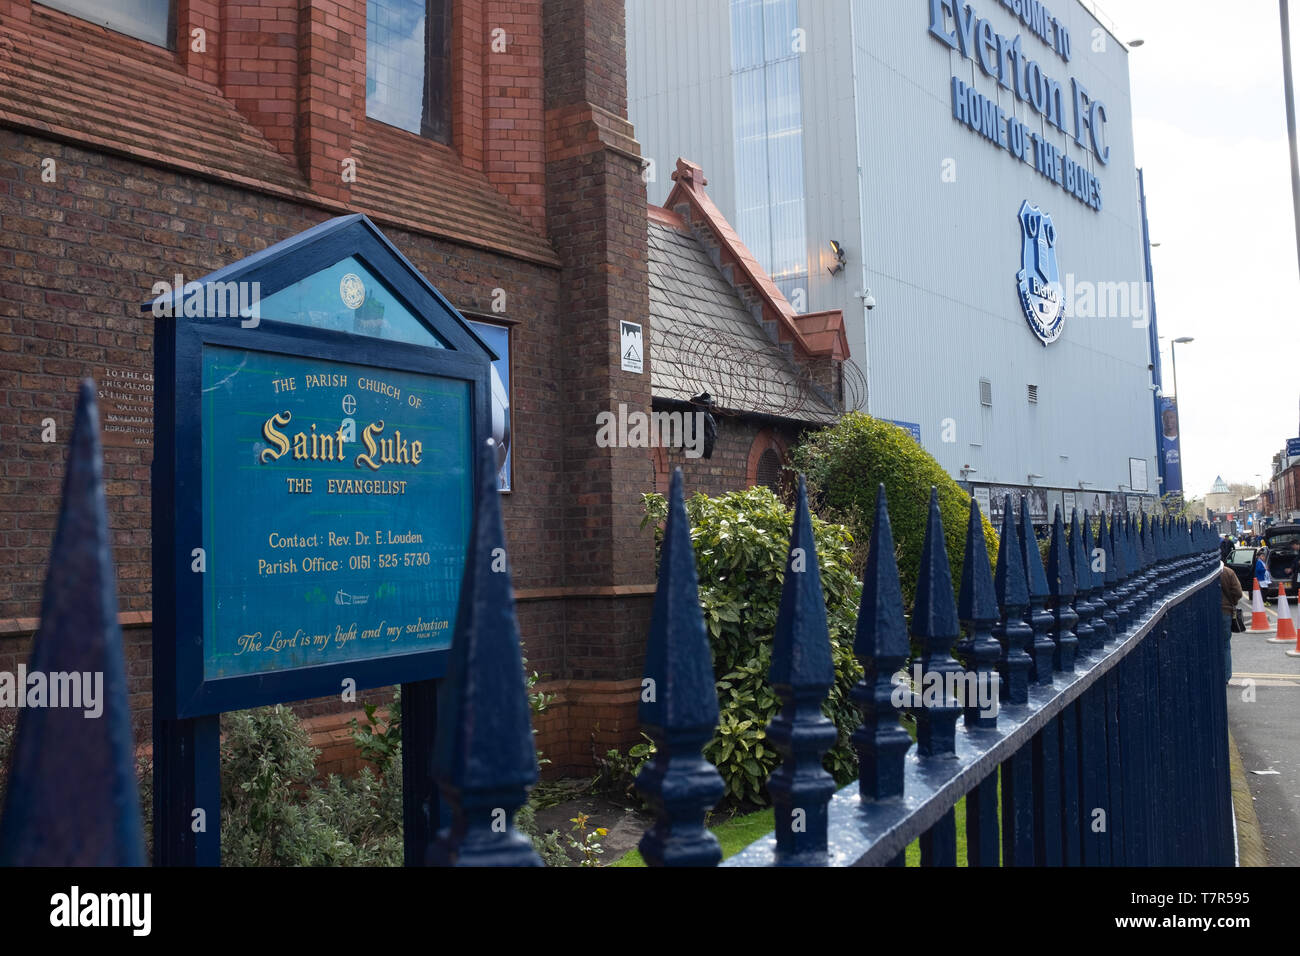 Everton, Liverpool, Reino Unido, Abril 17, 2016: la iglesia de San Lucas junto a Everton Football Club, Goodison Park Stadium, donde el equipo primero fue fundada en 1878, nadie en la imagen Foto de stock